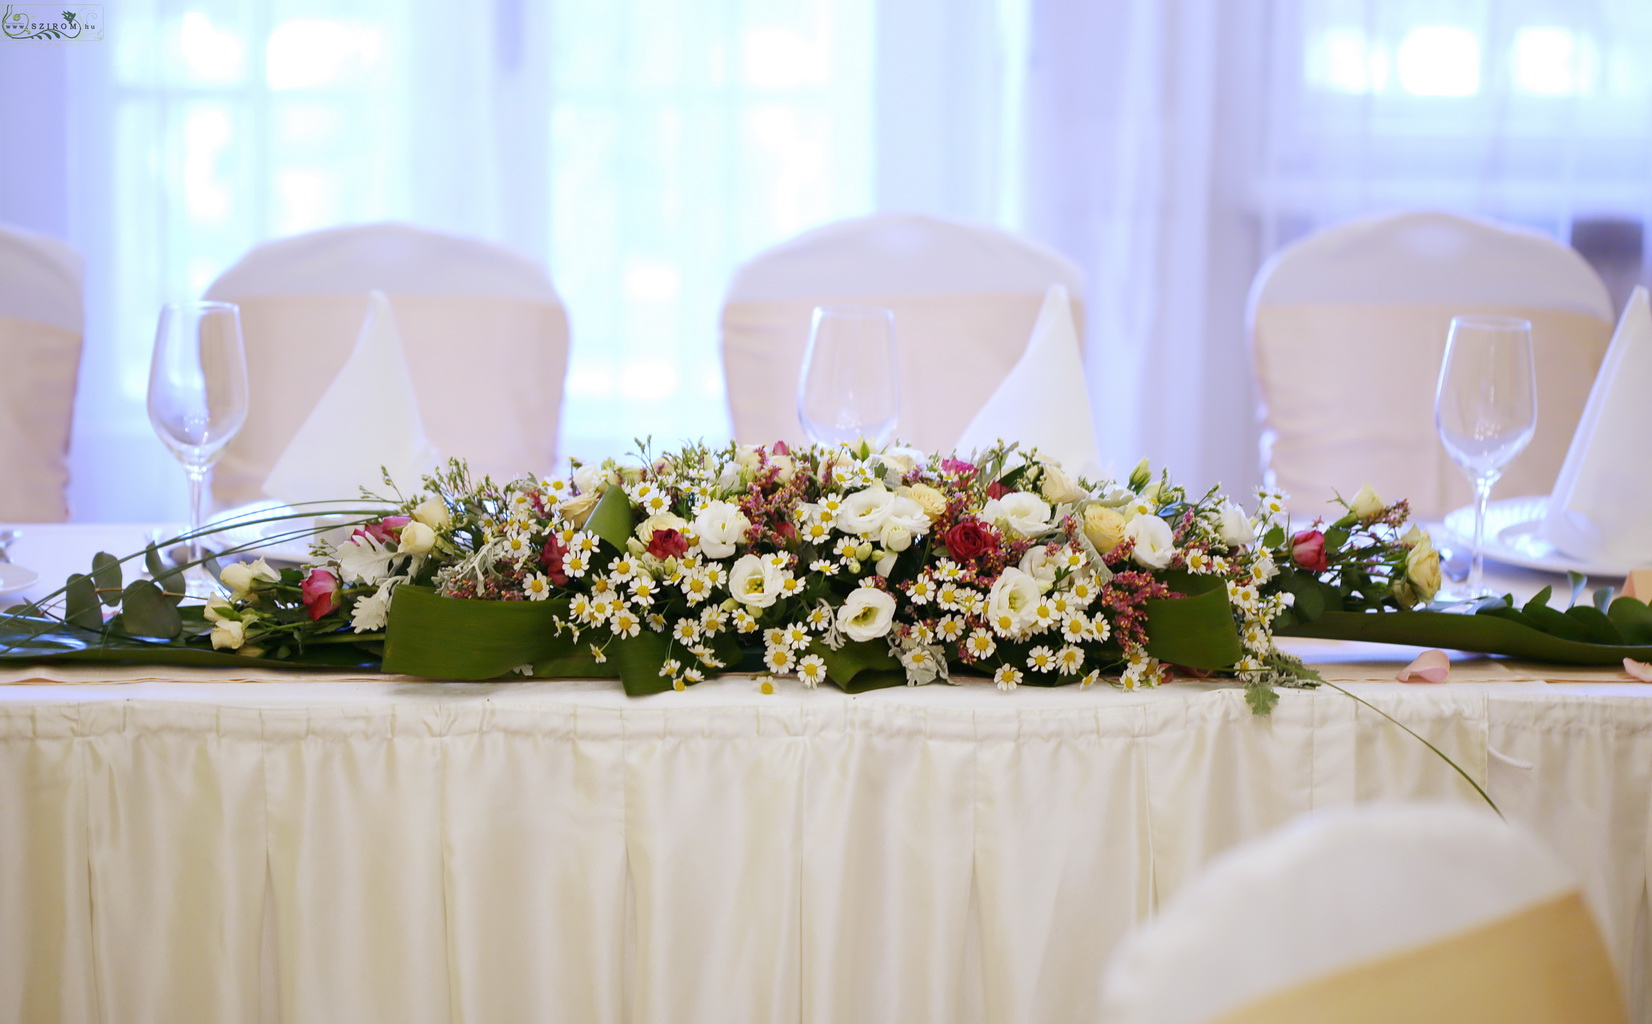 Hosszúkás asztaldísz (liziantusz, bokros rózsa, kamilla, fehér, lila) Ádám Villa